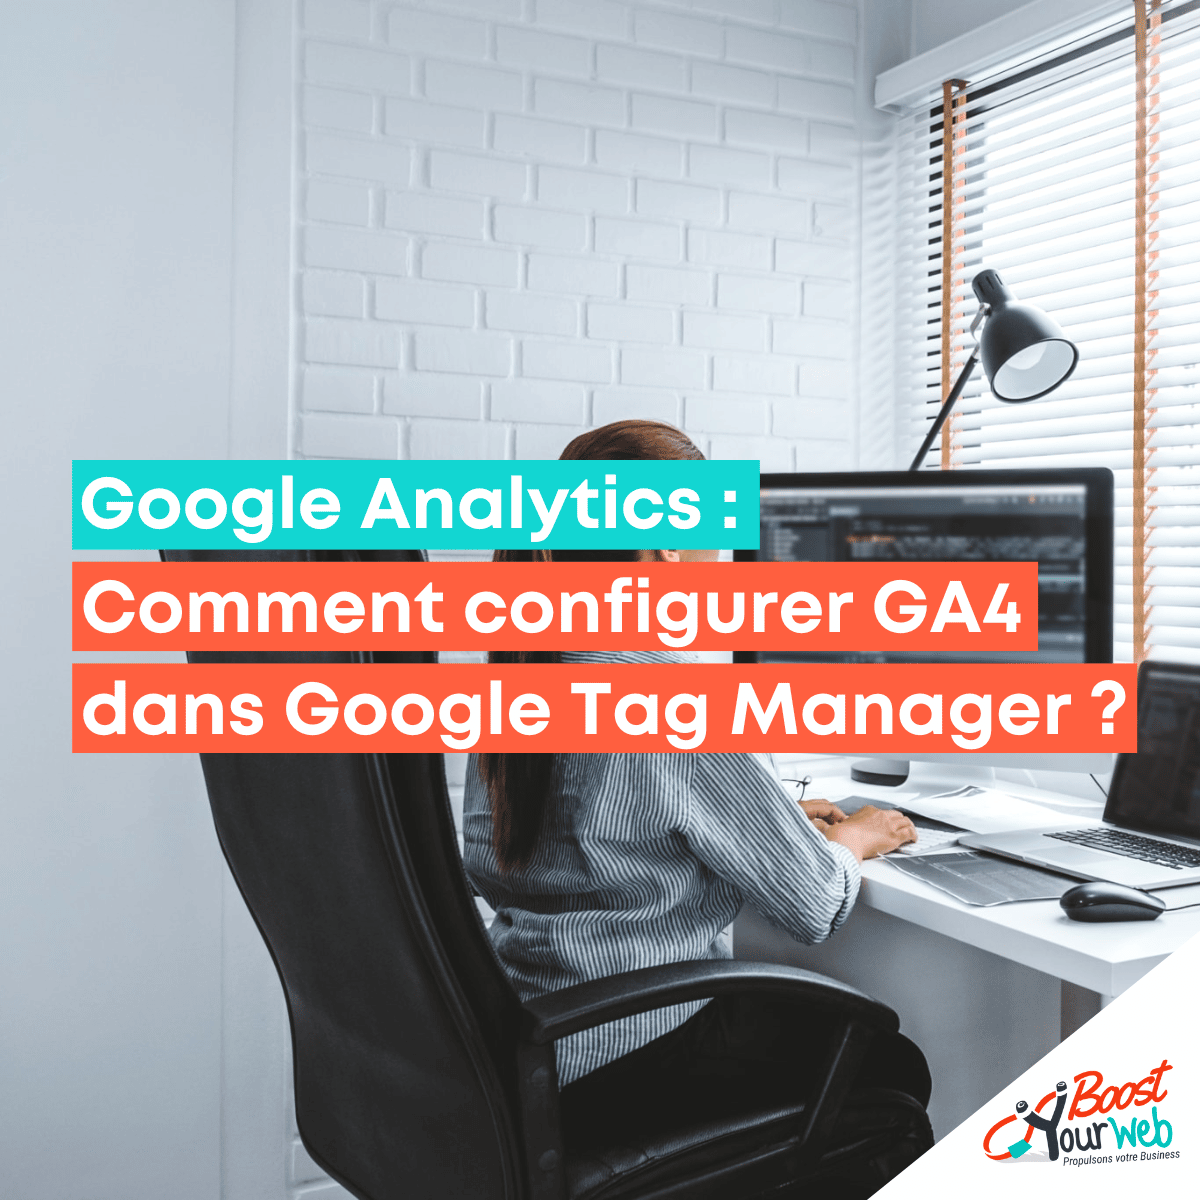 Comment configurer GA4 dans Google Tag Manager ?